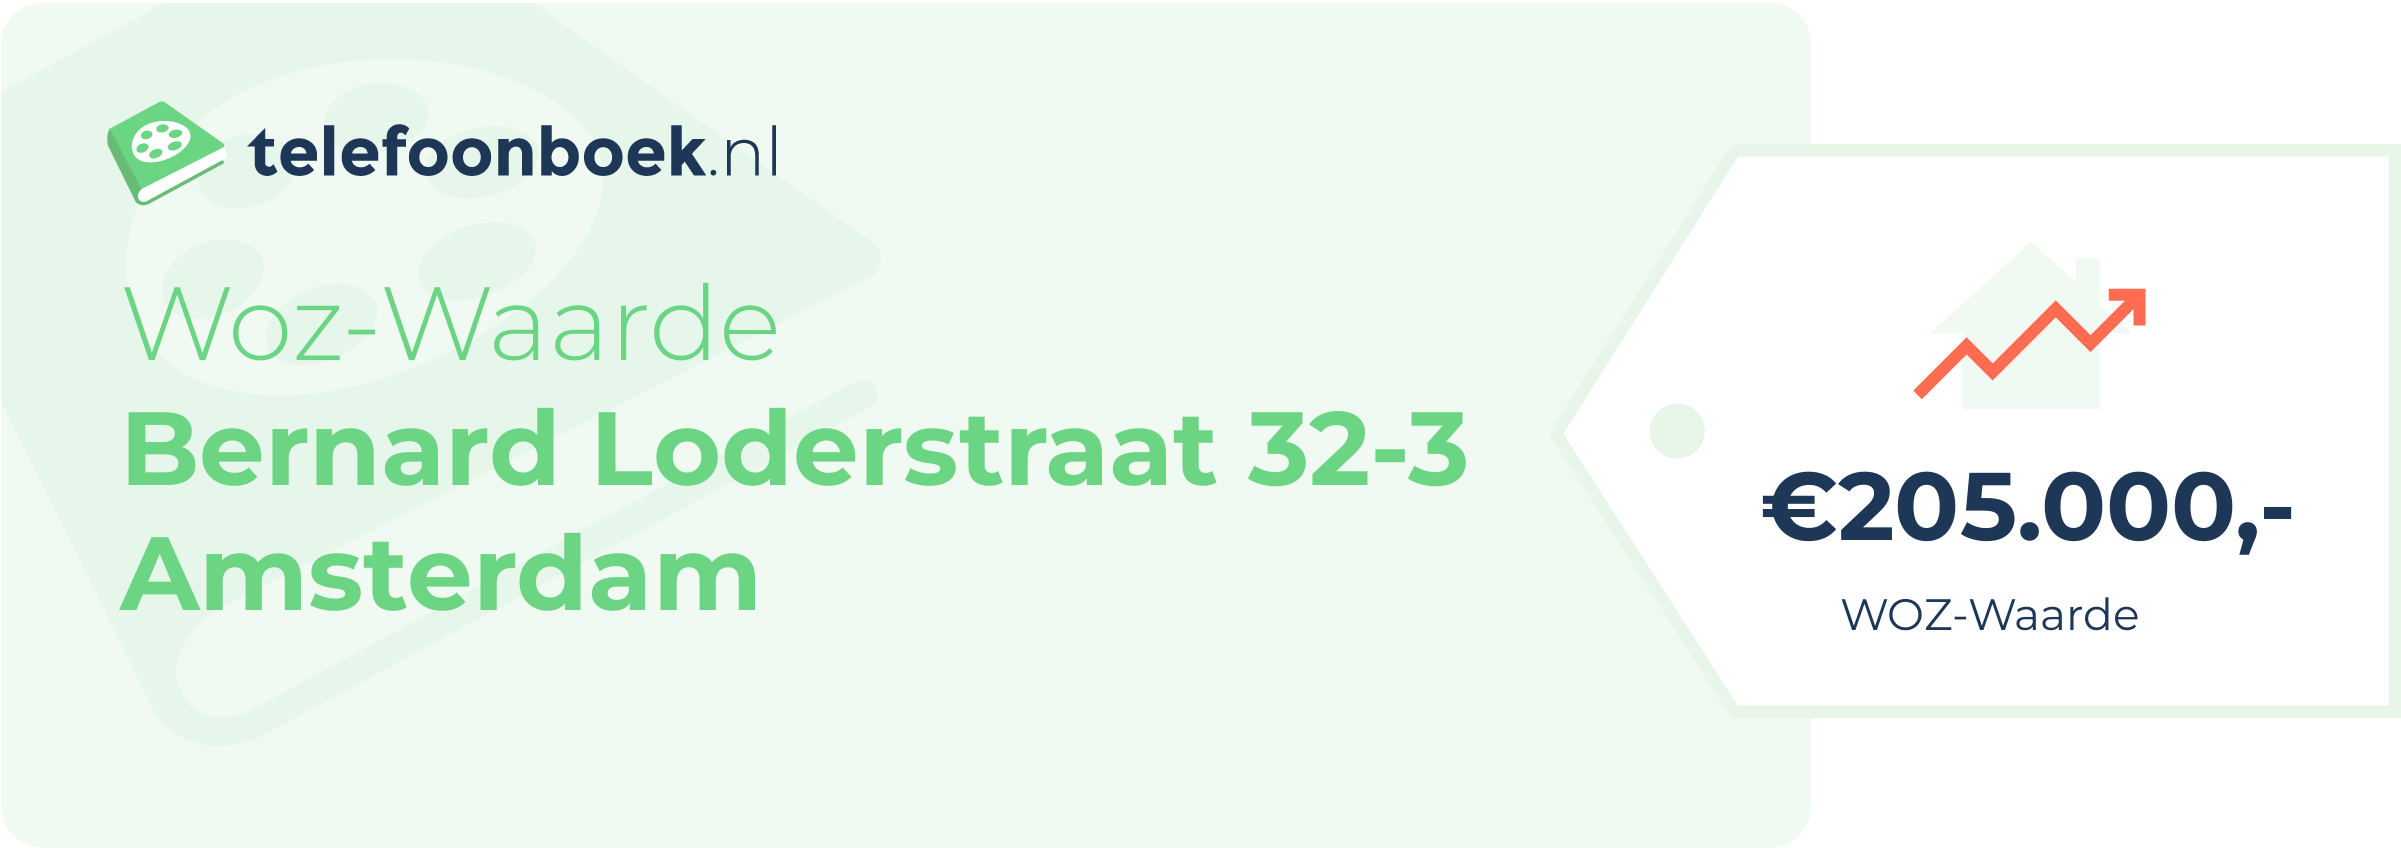 WOZ-waarde Bernard Loderstraat 32-3 Amsterdam